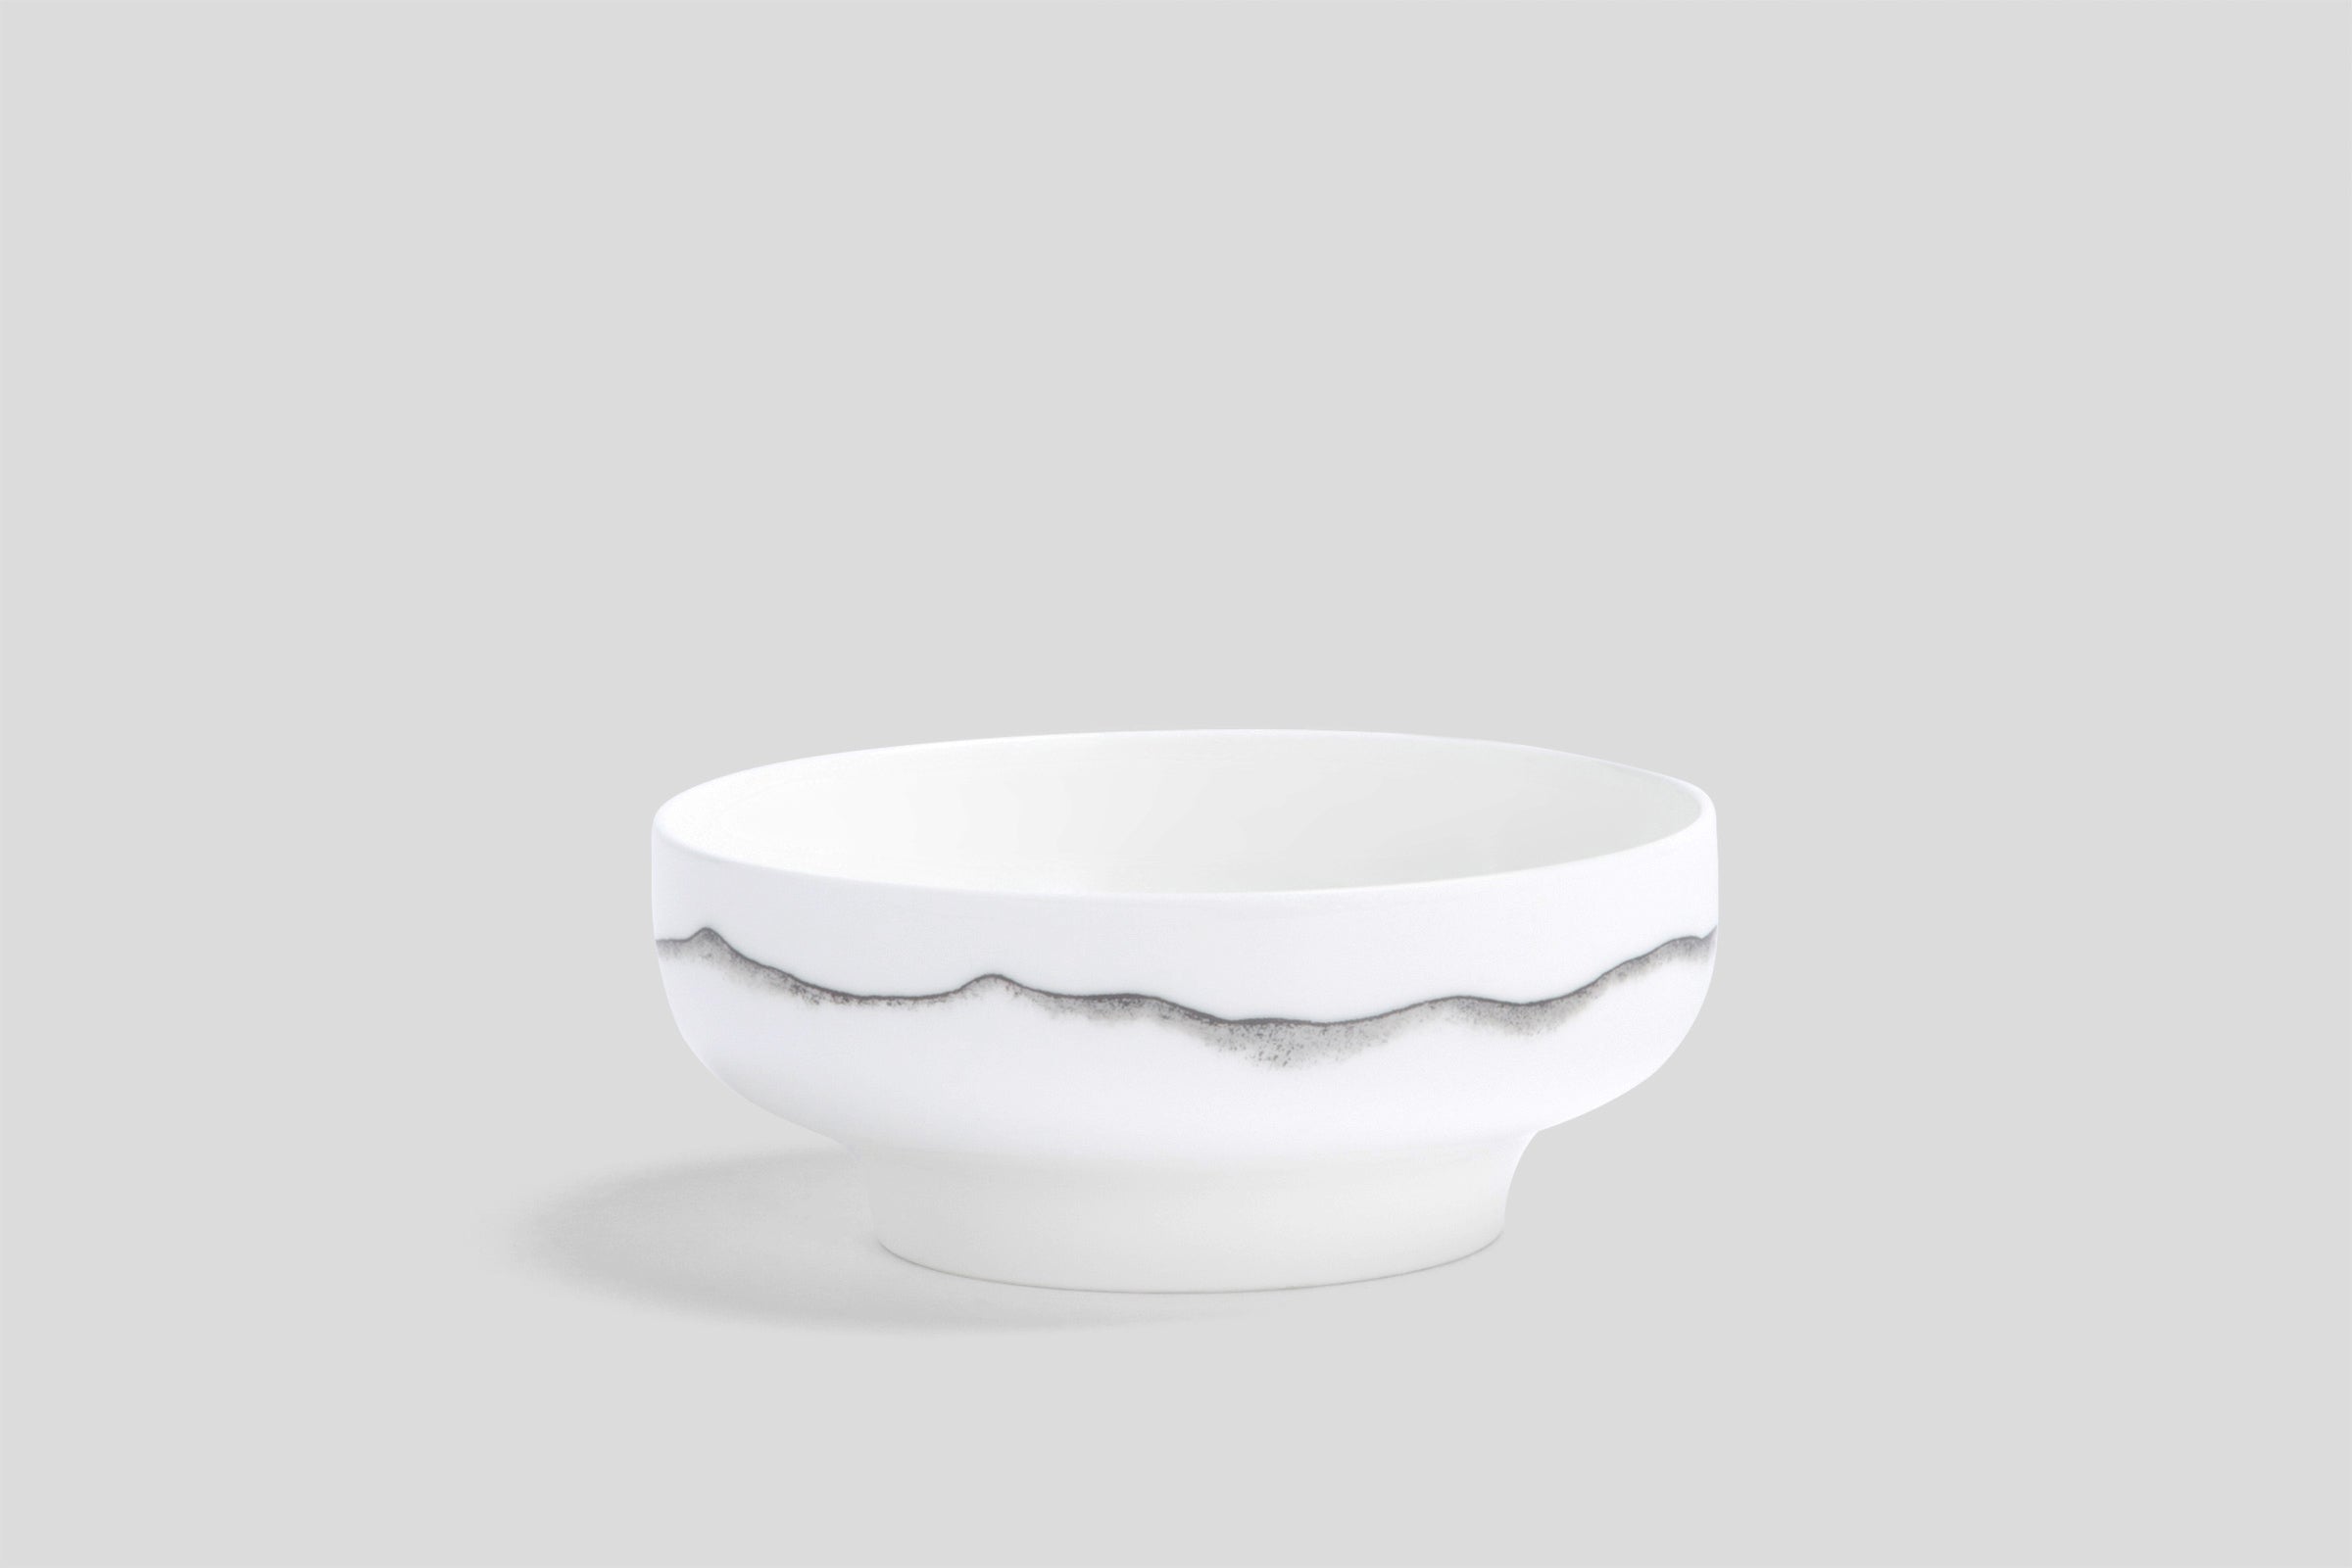 Nikko Landscape Soup Bowl & Plate